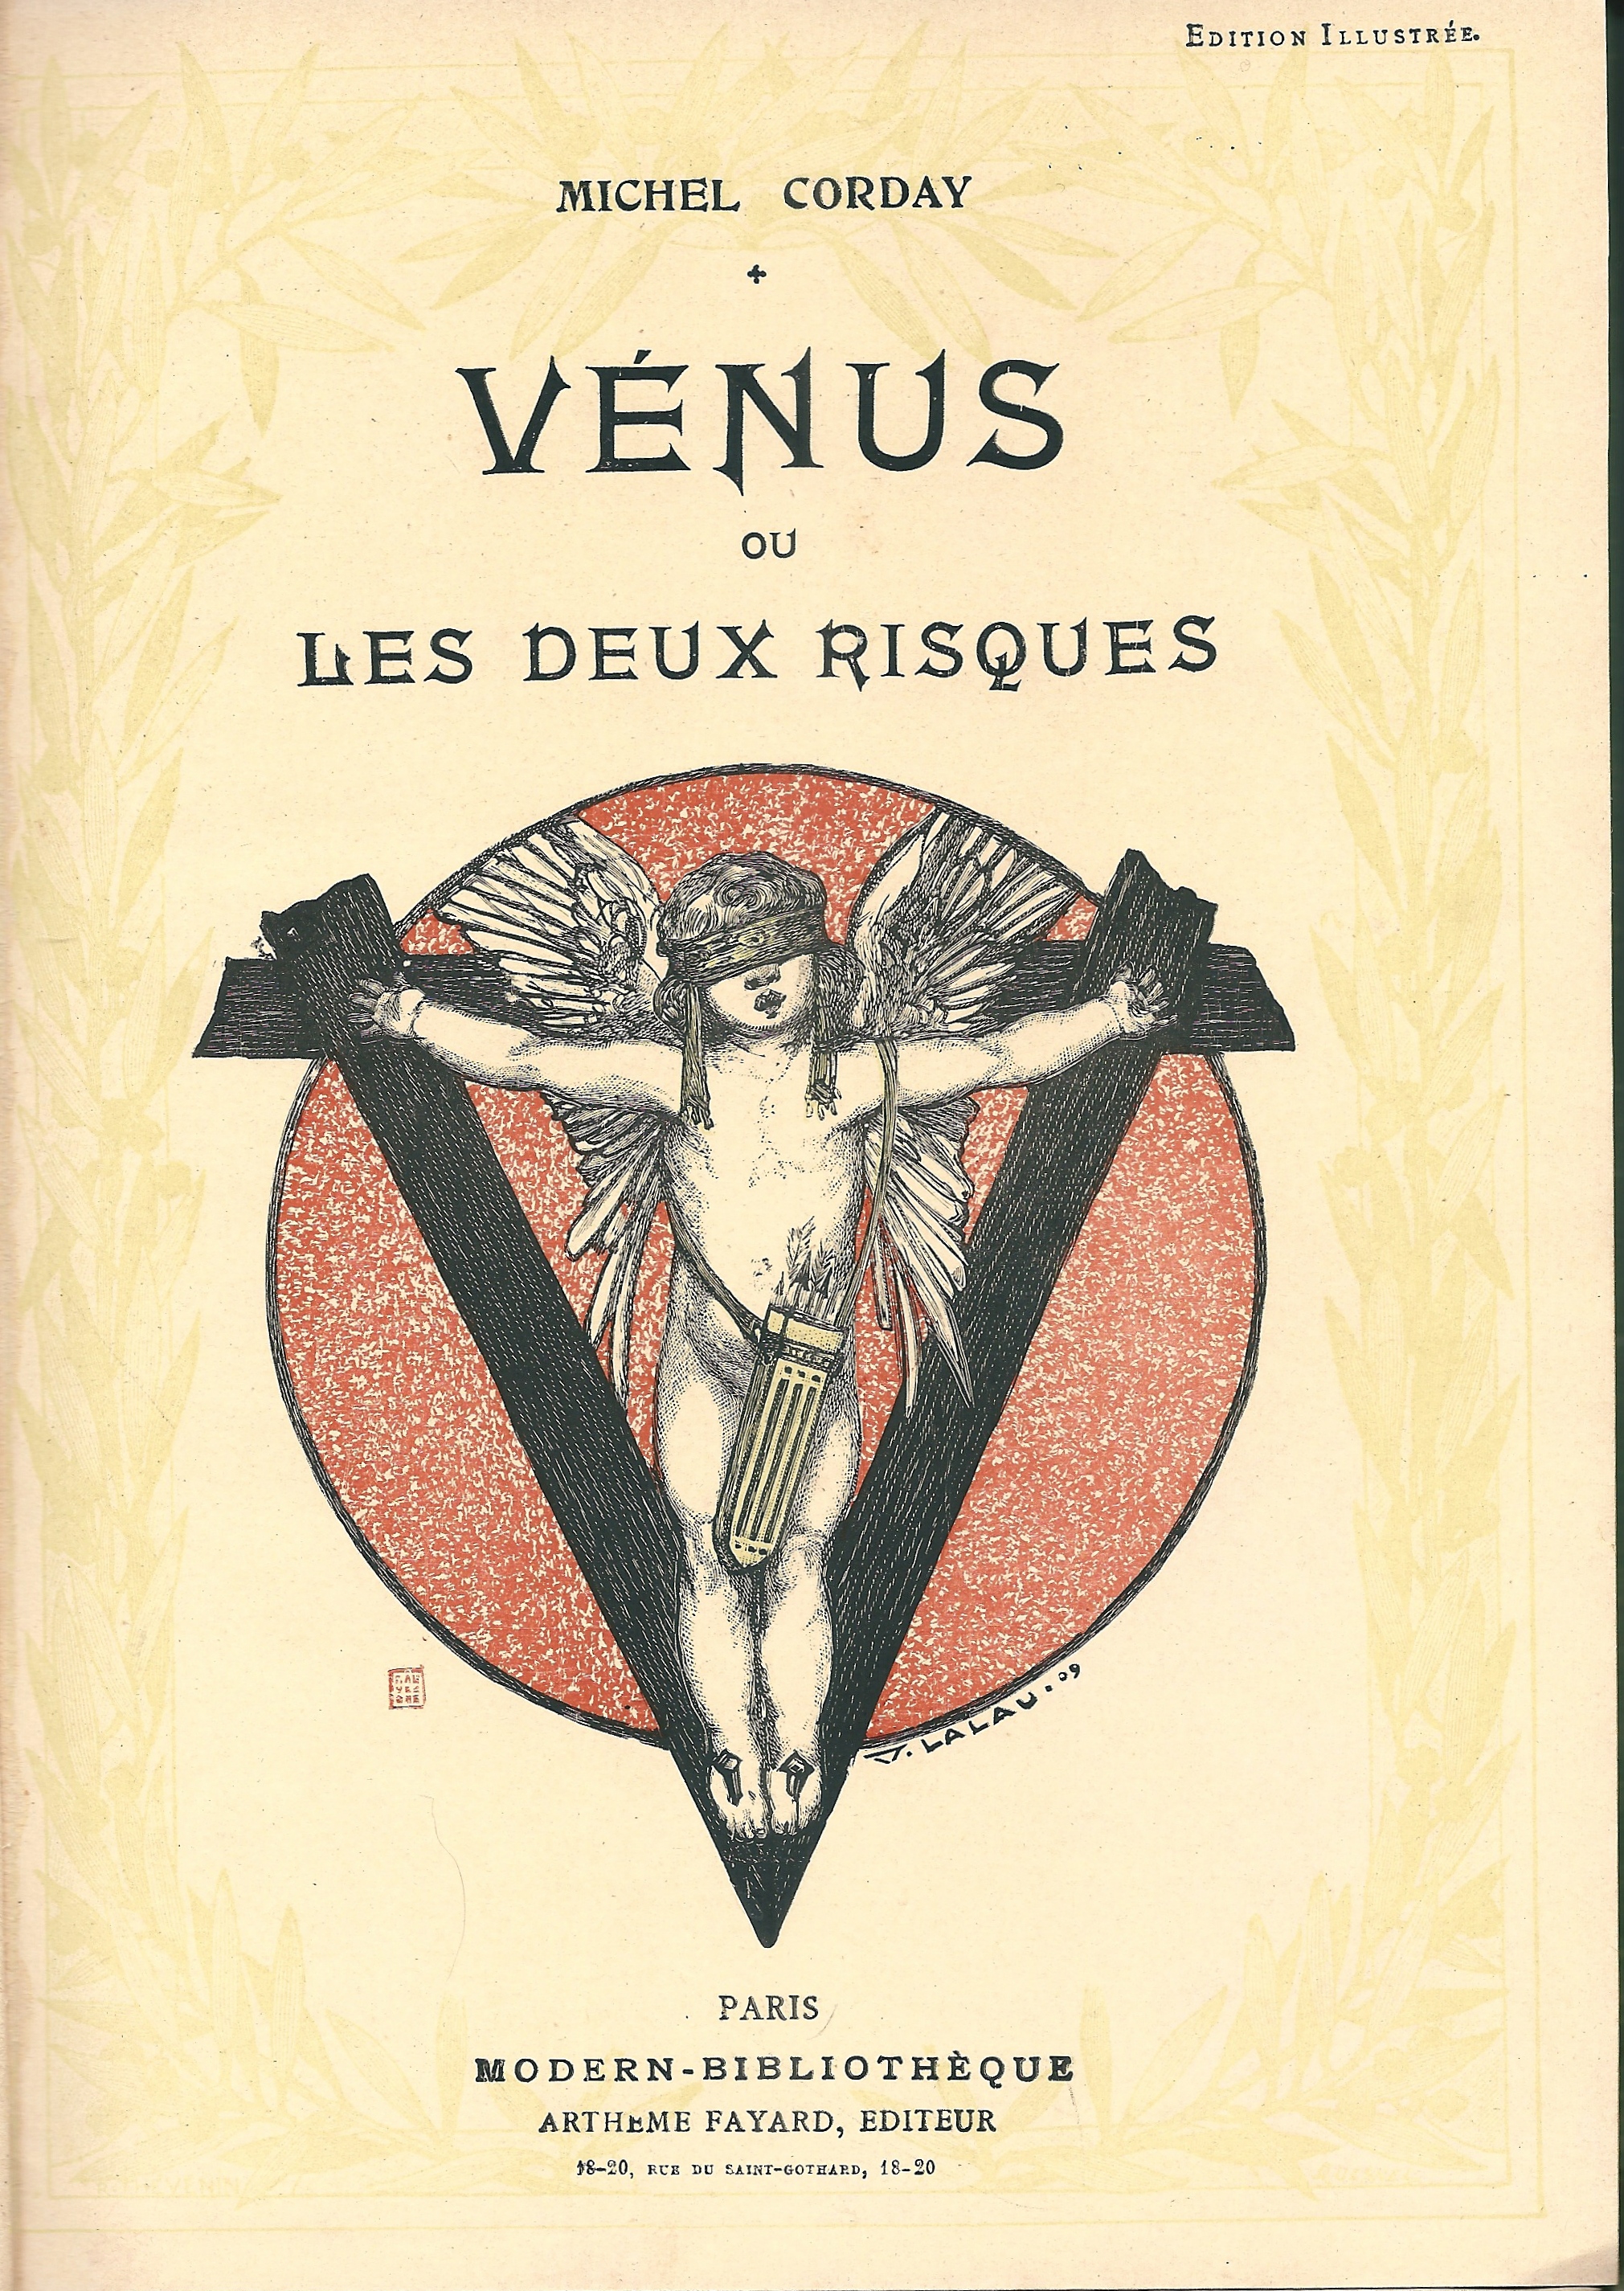 Couverture ou frontispice de ''Vénus ou les deux risques'' de Michel Corday, Paris : Modern-Bibliothèque, Arthème Fayard Éditeur, avril 1909.